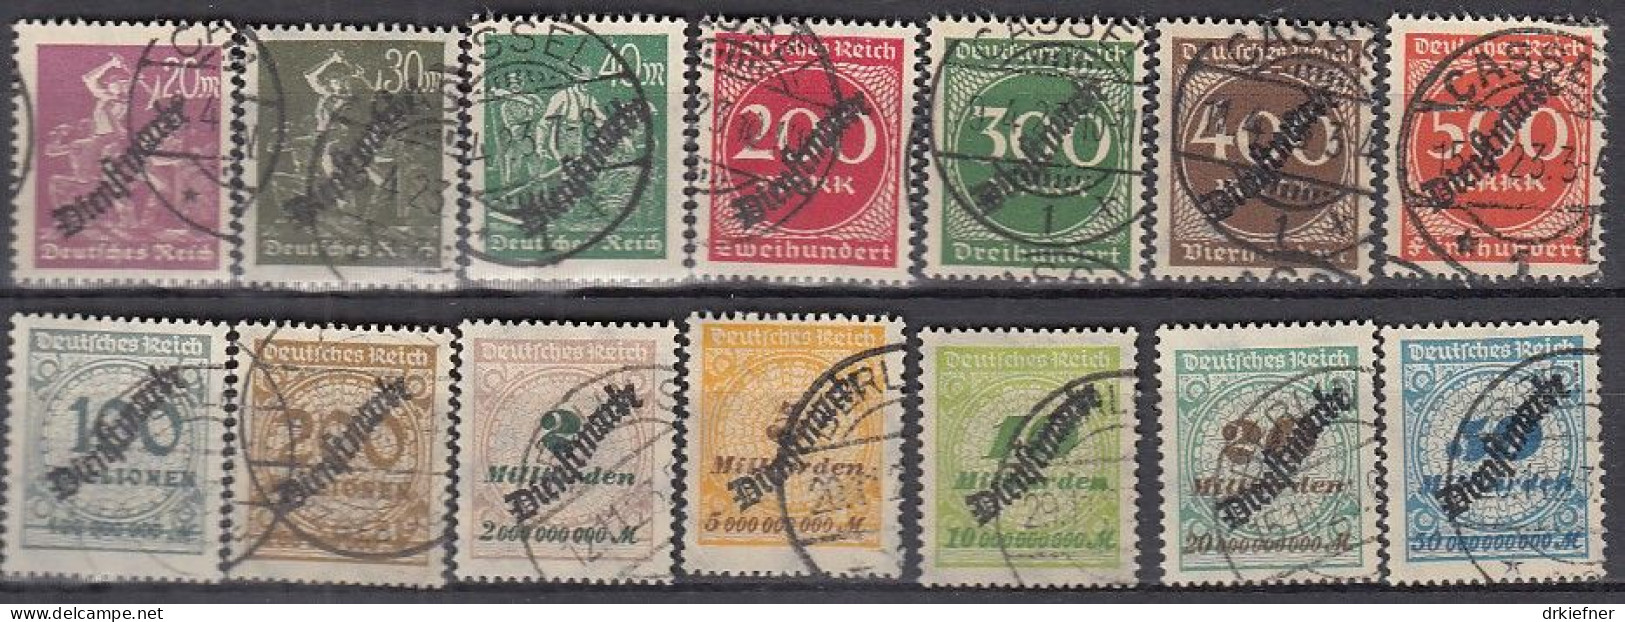 DR  Dienst 75-88, Gestempelt, Nicht Geprüft, Stempel Meist Falsch, 6x HT, Mit Schlangenförmigem Aufdruck, 1921 - Dienstzegels